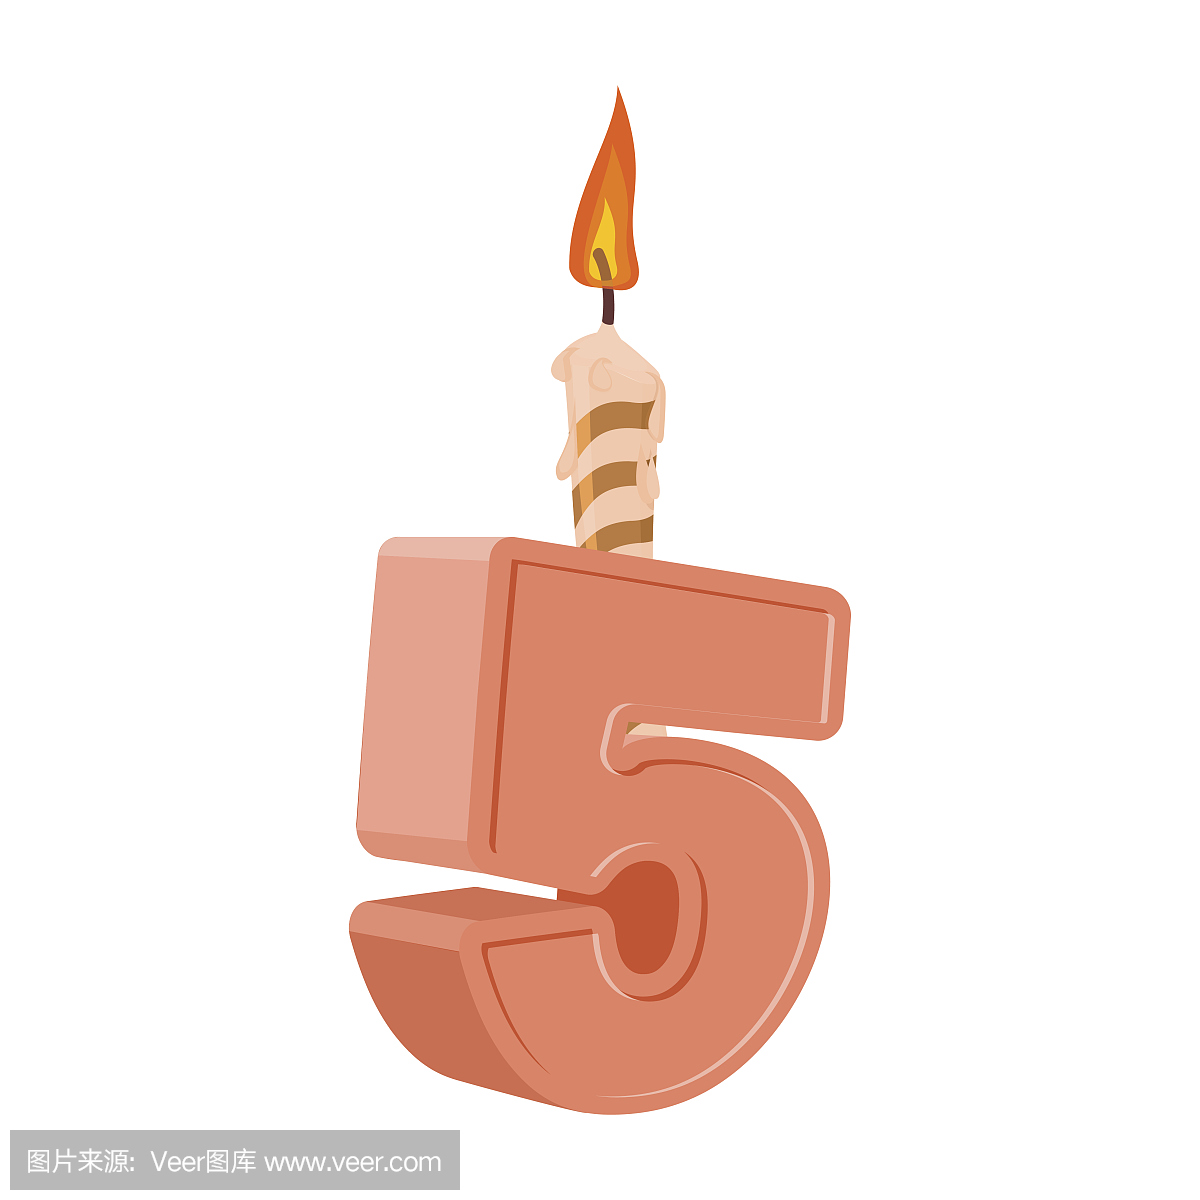 5岁生日。数量节日蜡烛为假期蛋糕。五周年